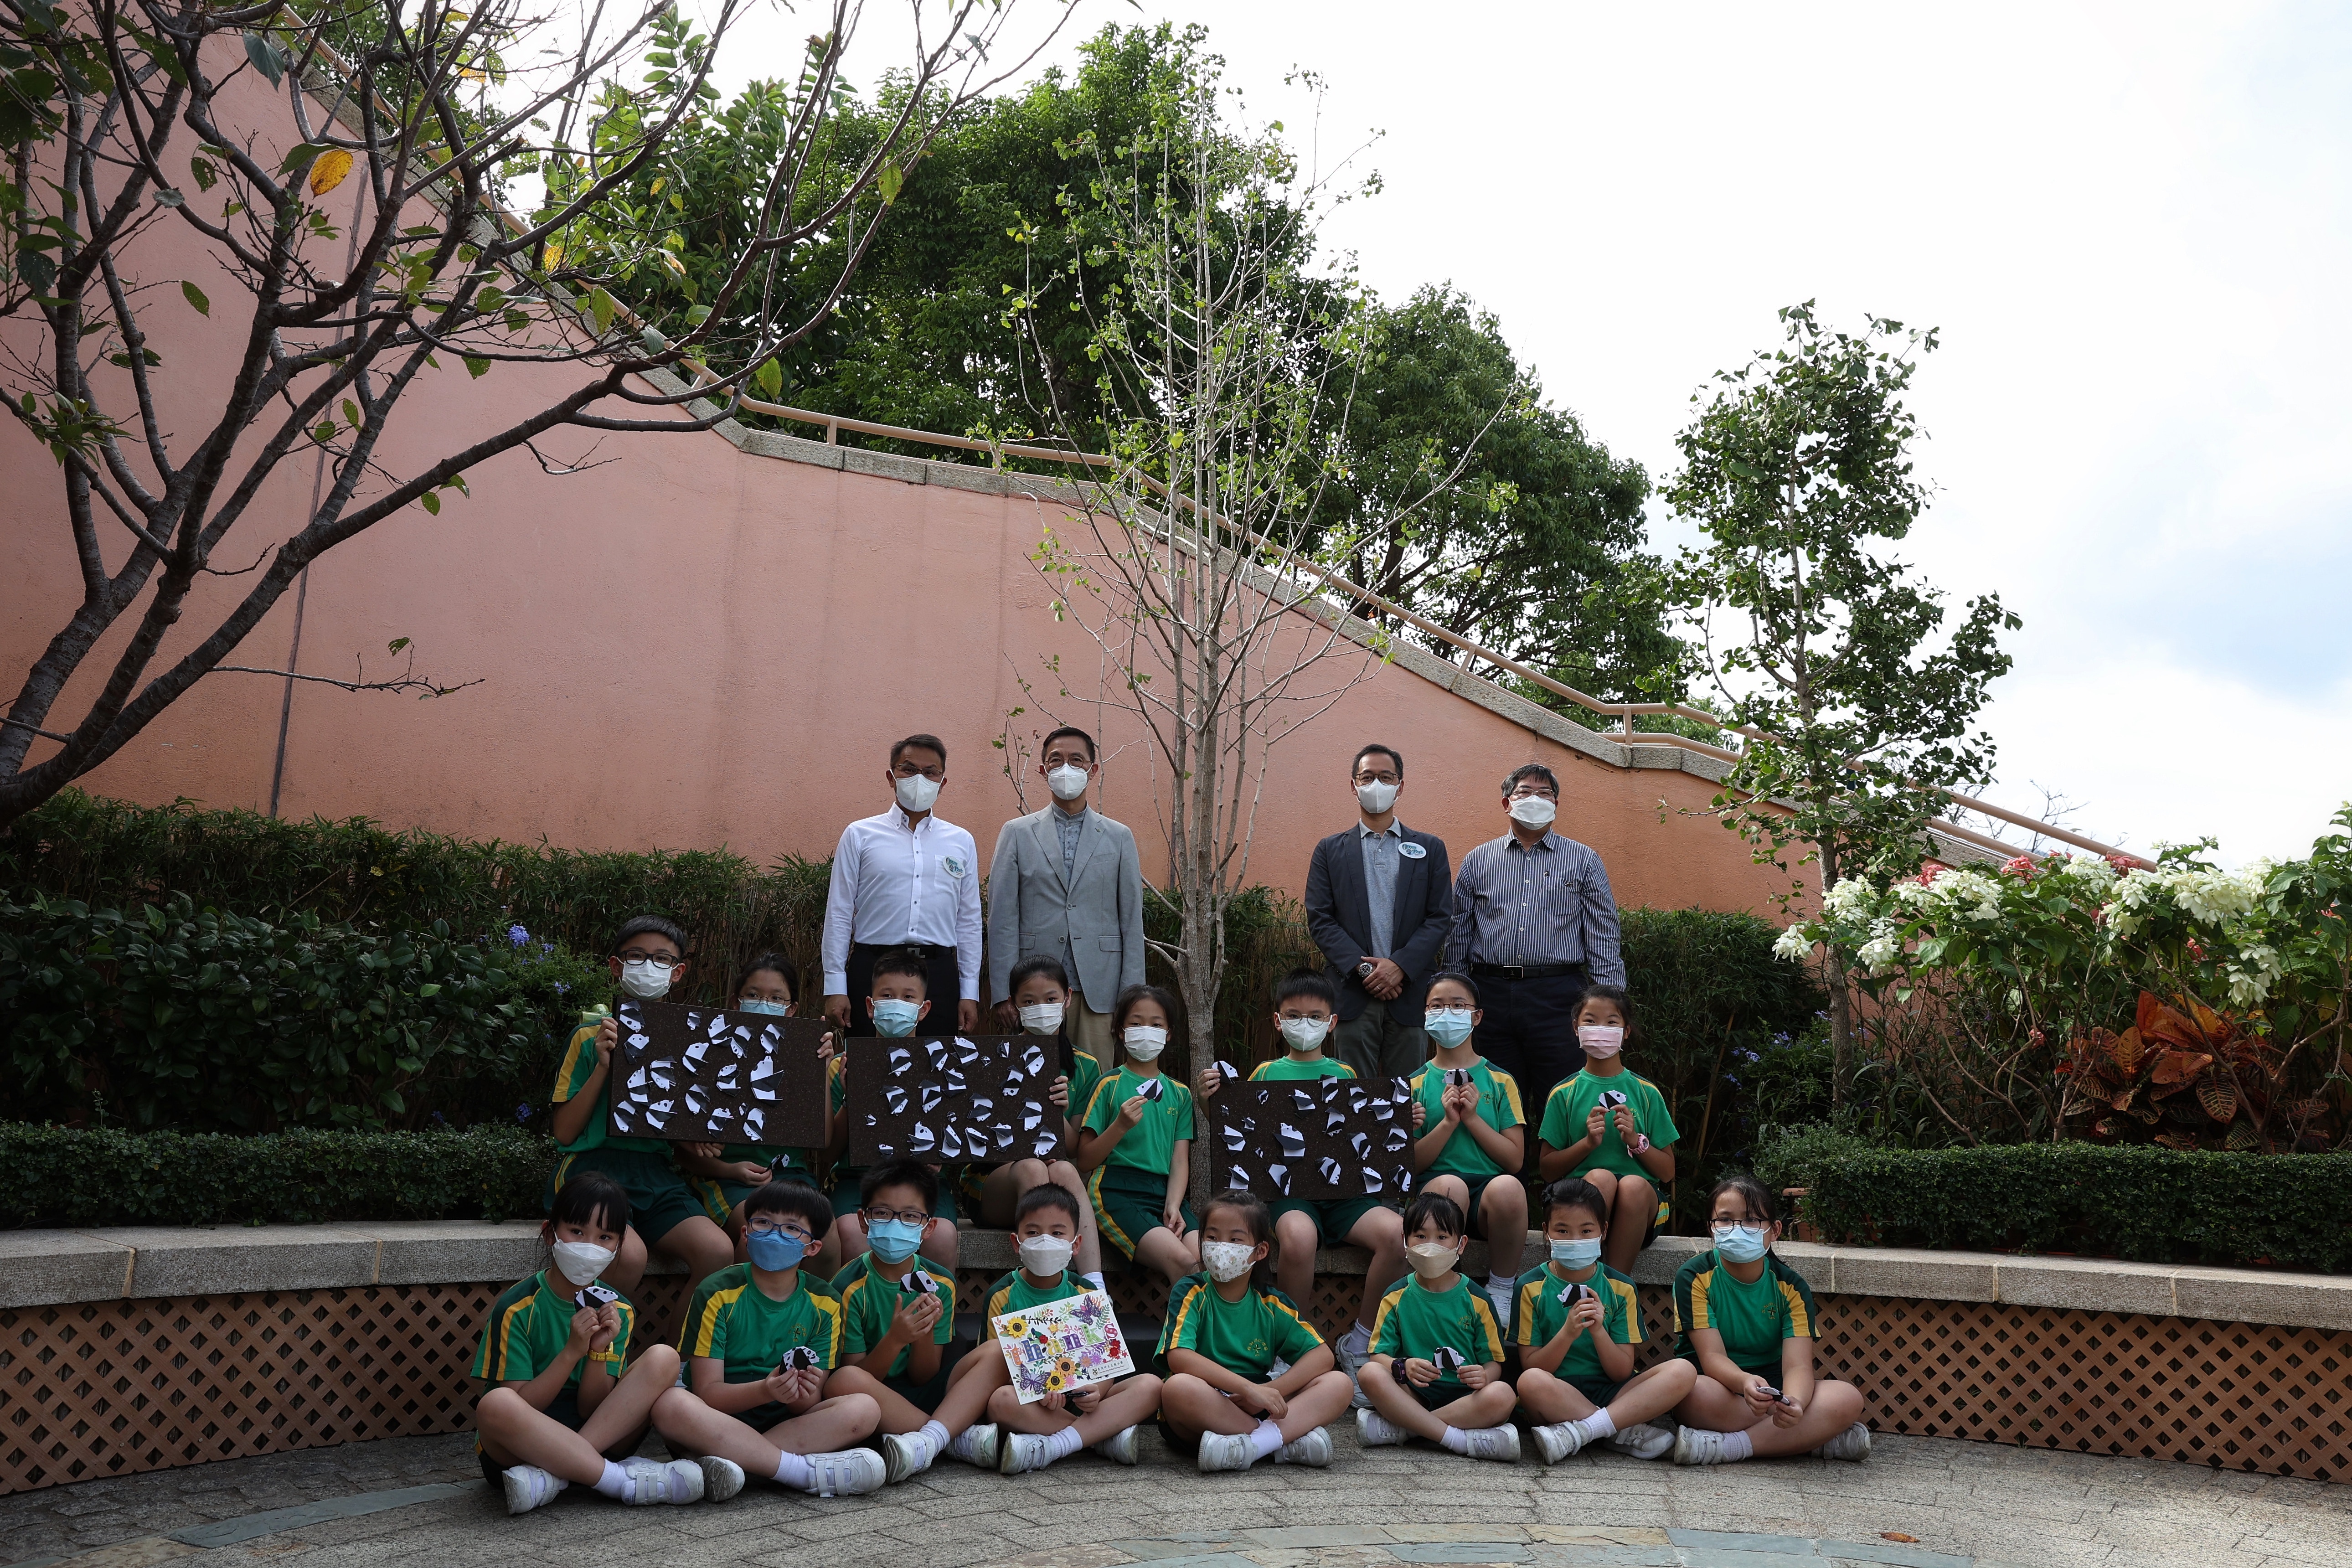 大熊猫安安的骨灰9月28日放在其故居 「香港赛马会四川奇珍馆」外新种植的银杏树下，海洋公园同日举行植树悼念仪式。（李泽彤摄）